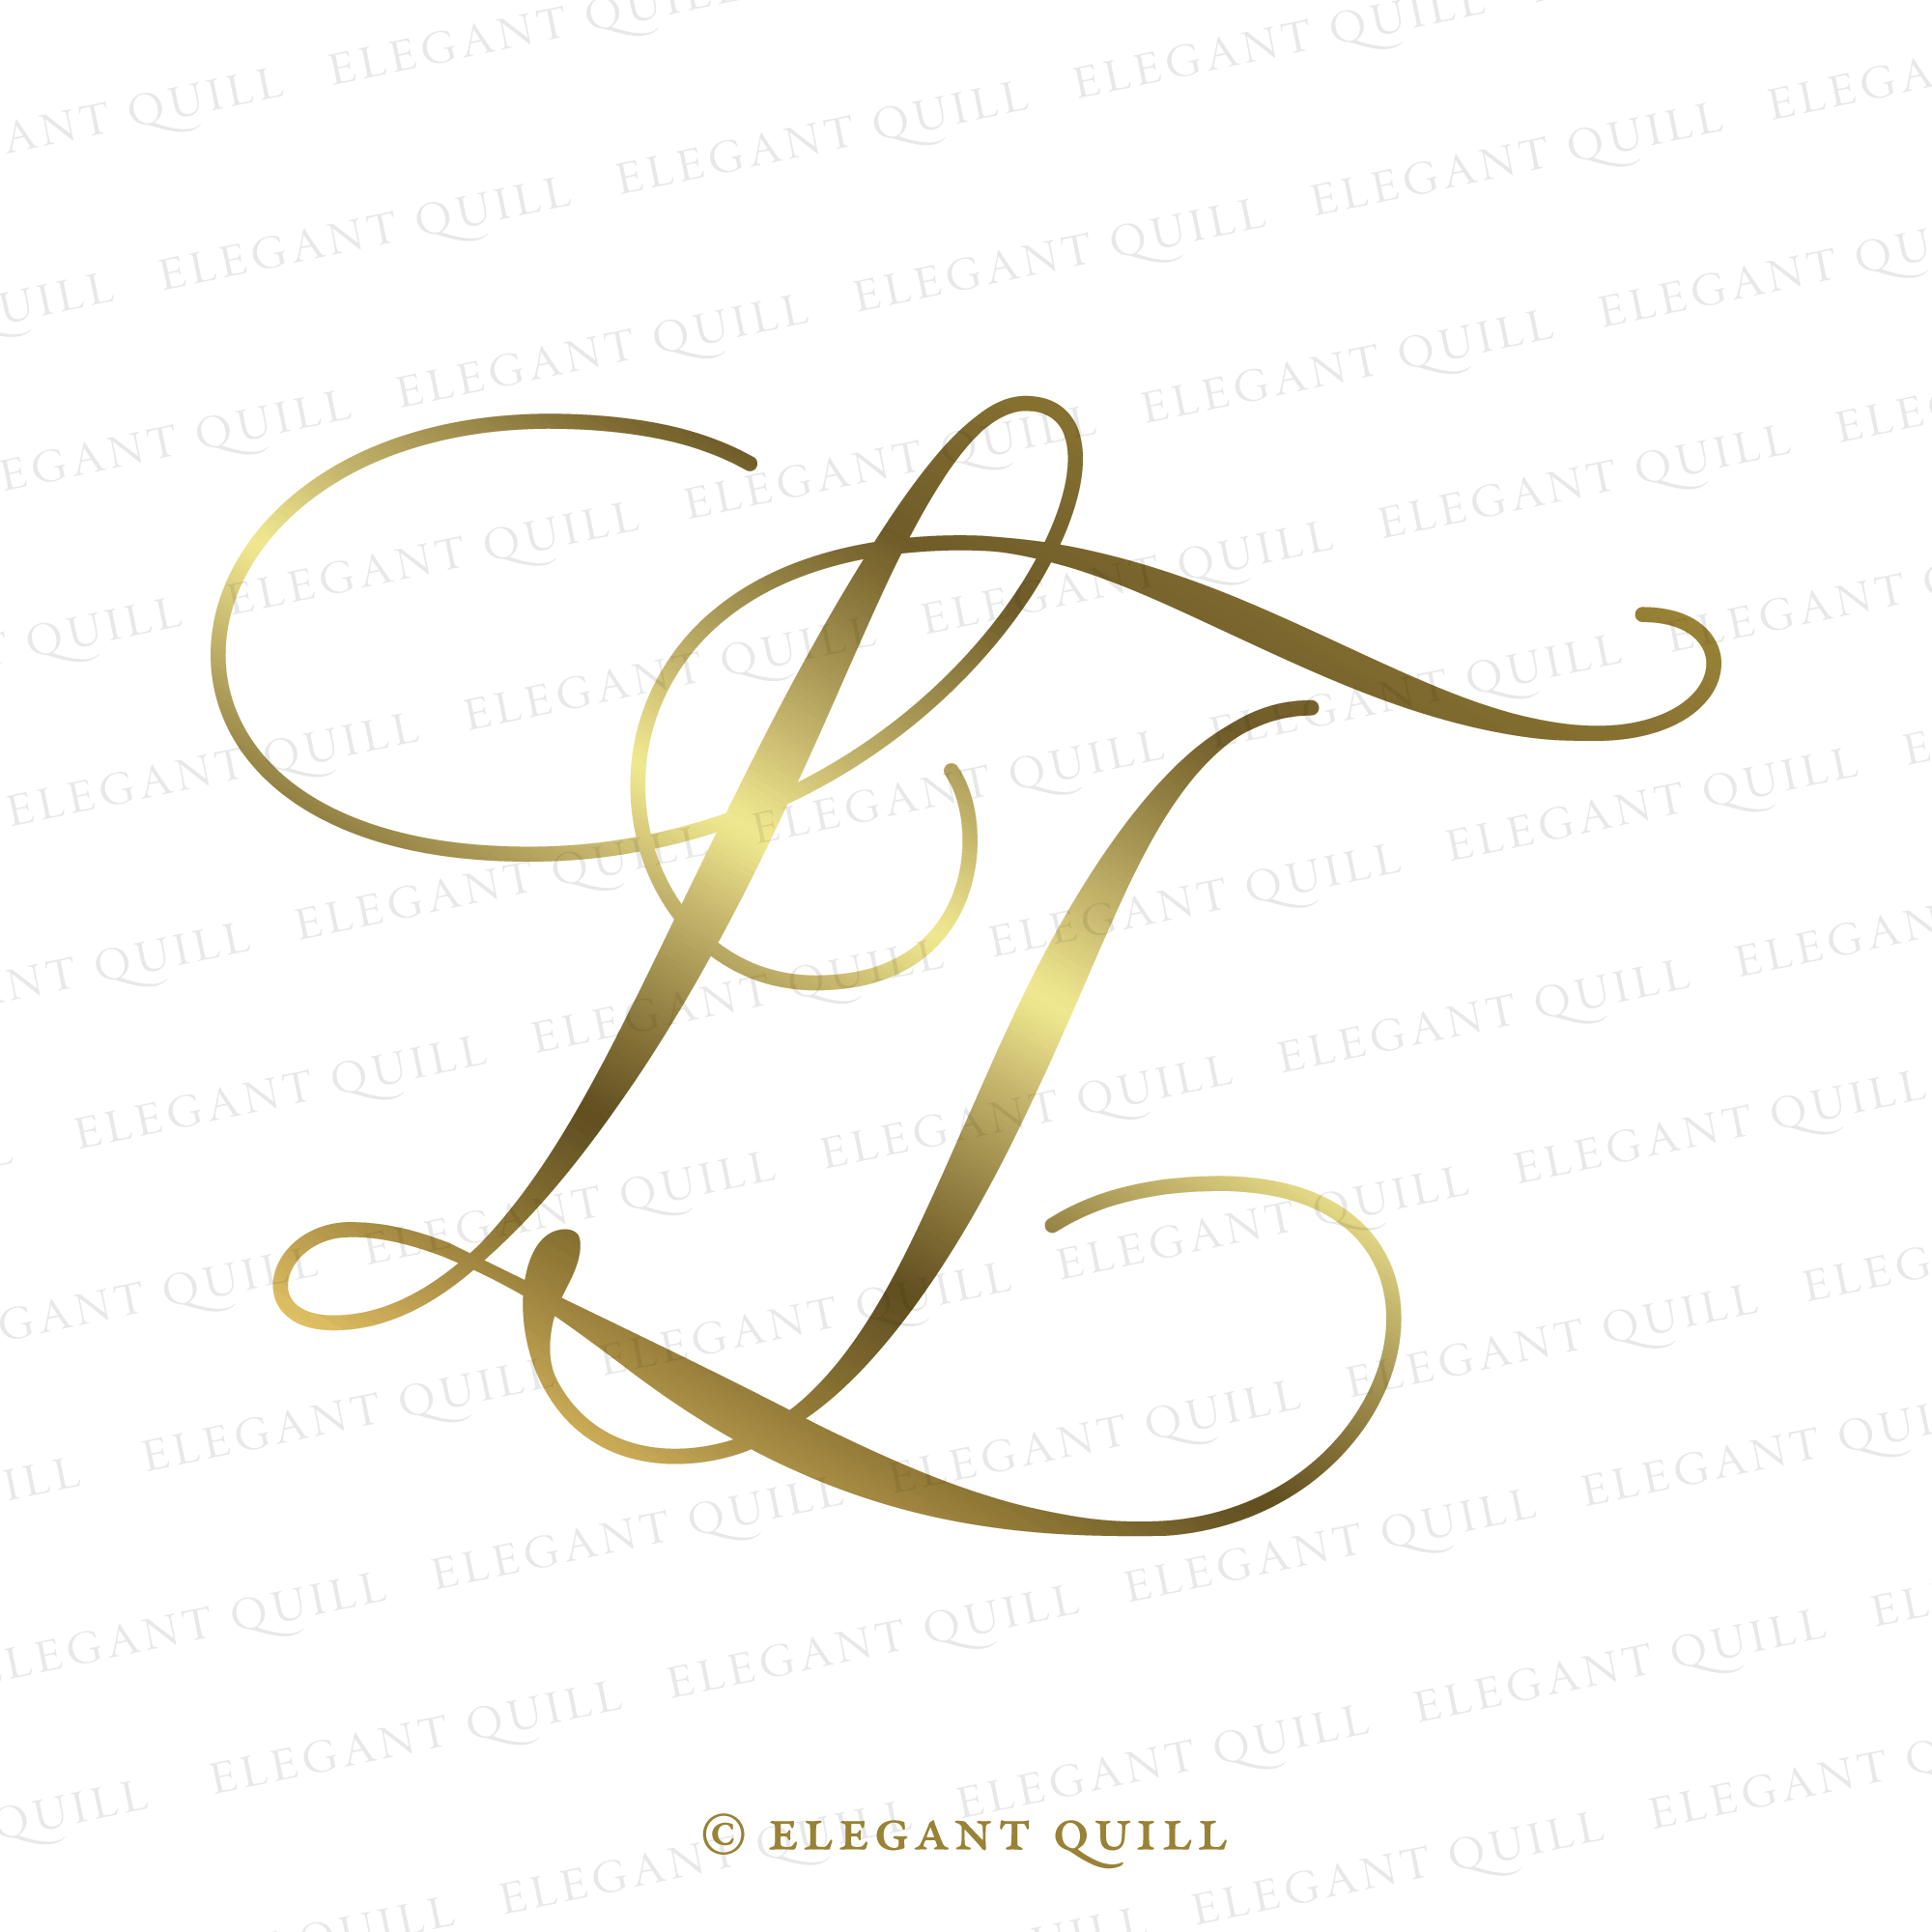 Wedding Monogram Logo, NP Initials – Elegant Quill